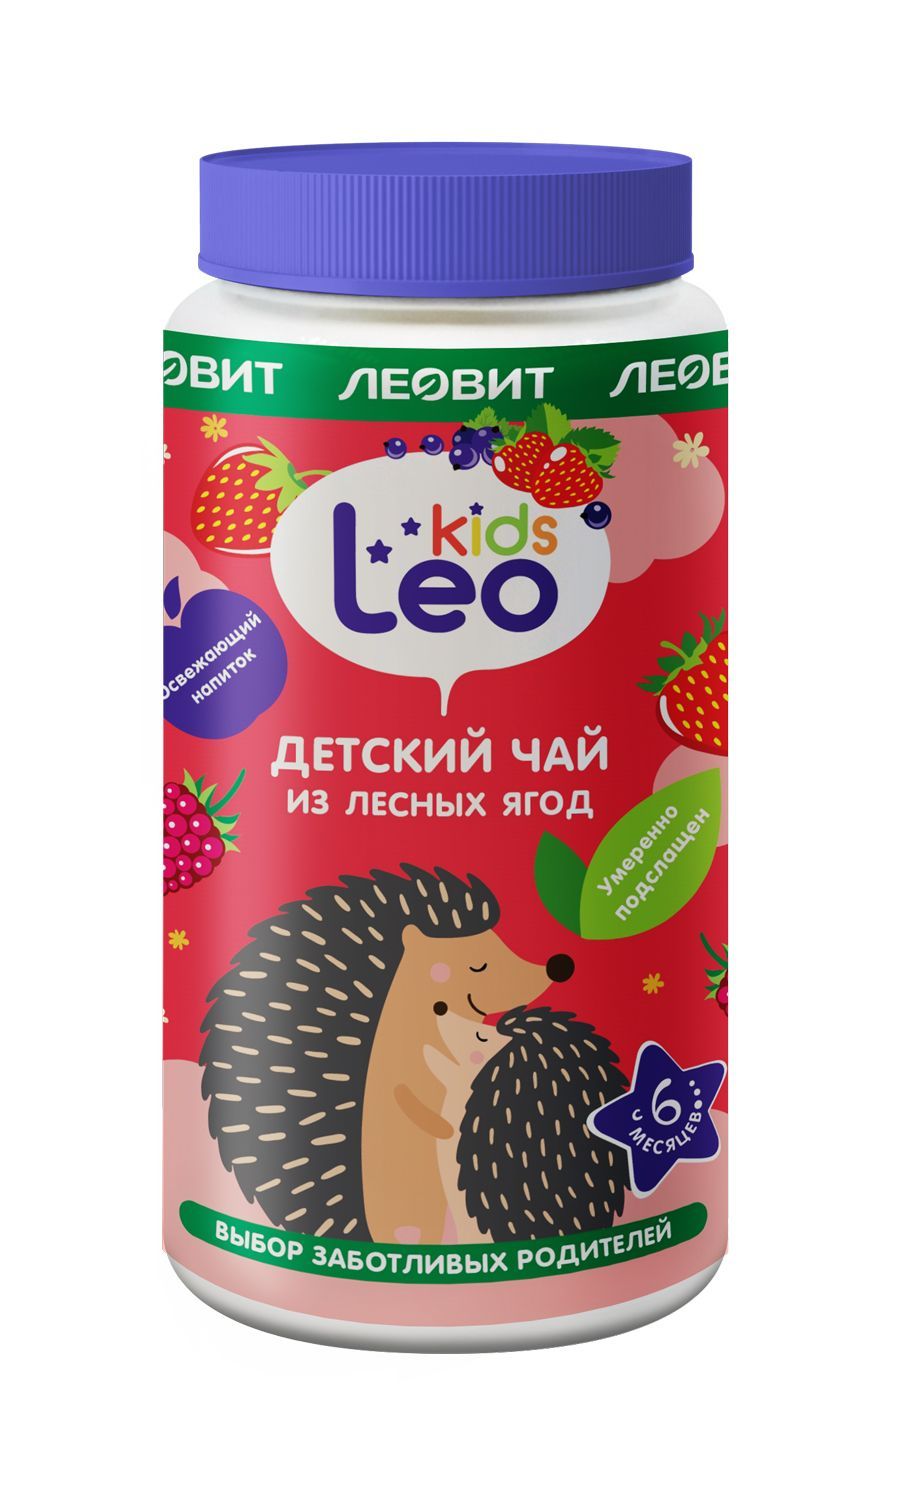 фото упаковки Леовит Leo Kids Детский чай из лесных ягод